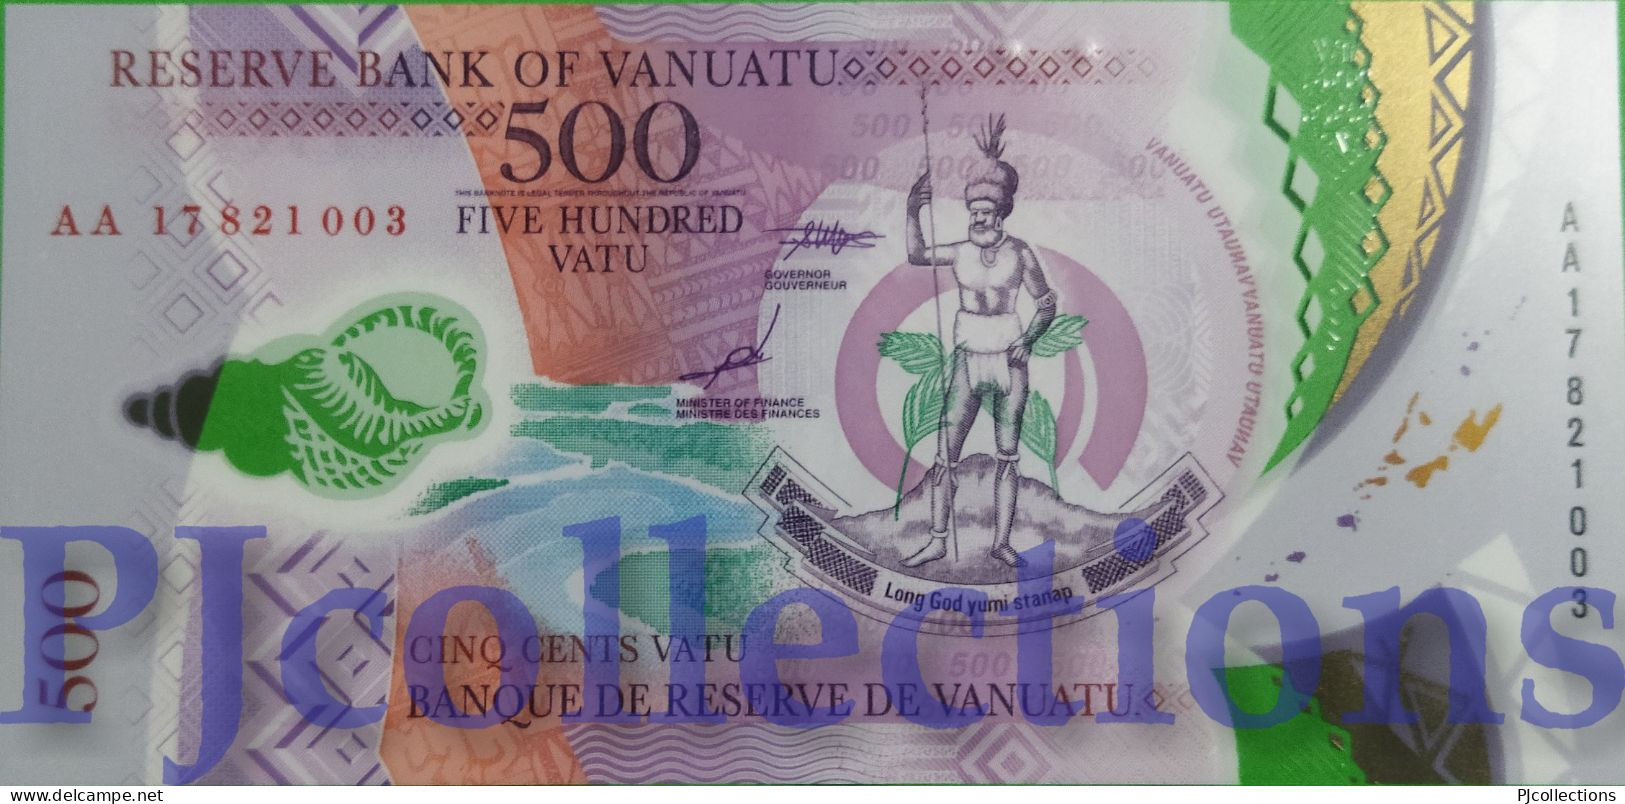 VANUATU 500 VATU 2017 PICK 18 POLYMER UNC PREFIX "AA" - Vanuatu